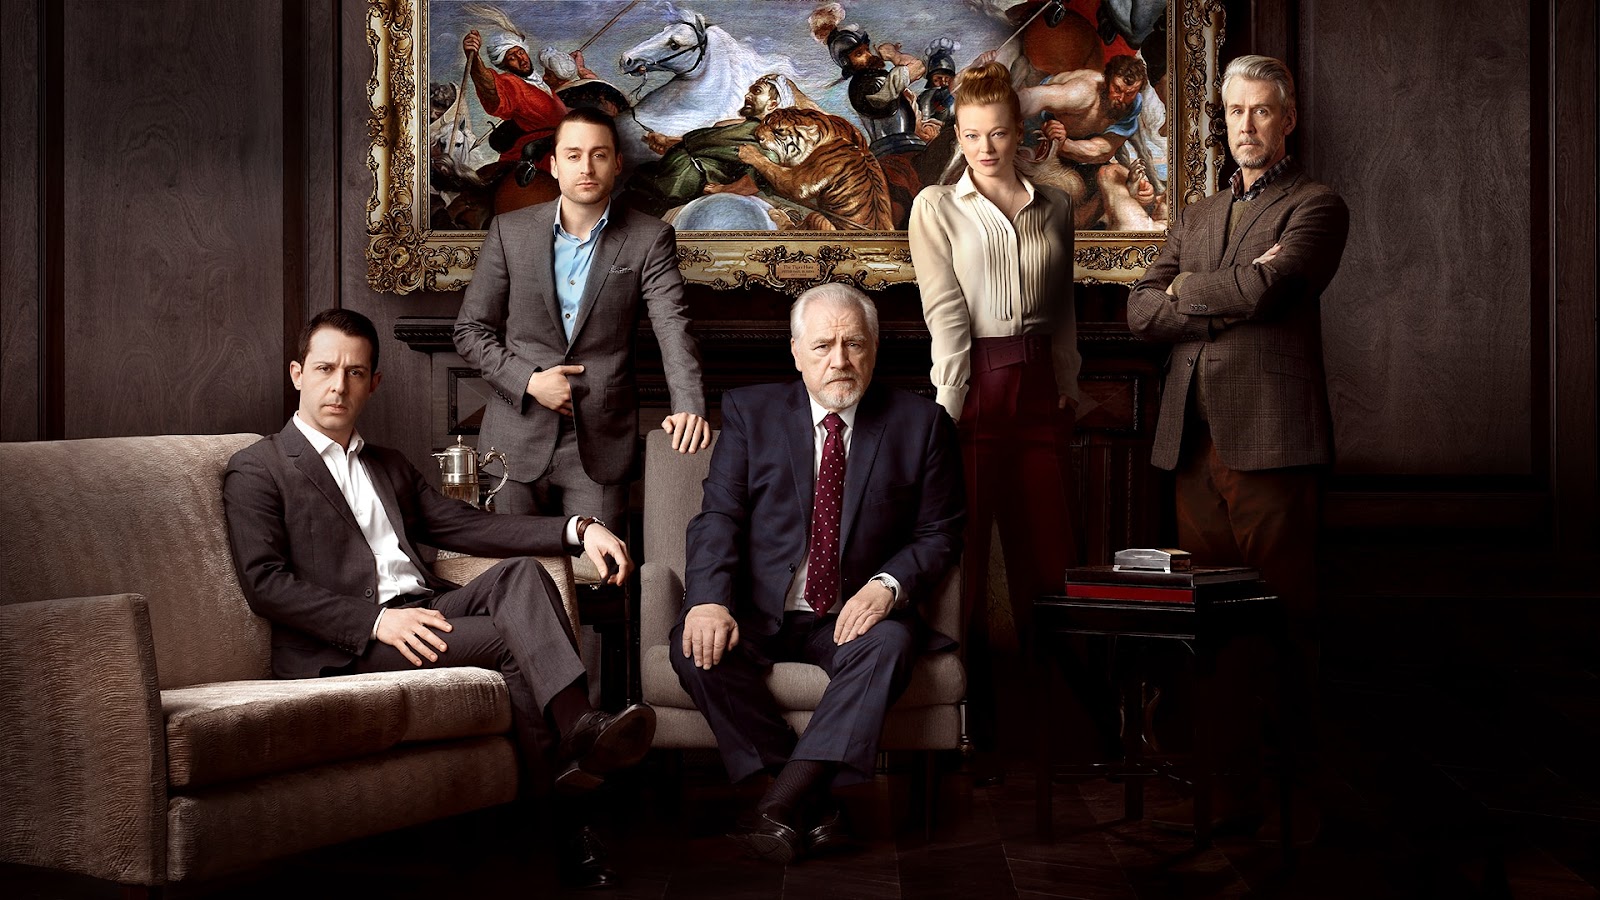 Plano general del cast de Succession, interpretando sus personajes. Al centro se encuentra Logan Roy, rodeado de sus cuatro hijos. Todos visten de traje formal.